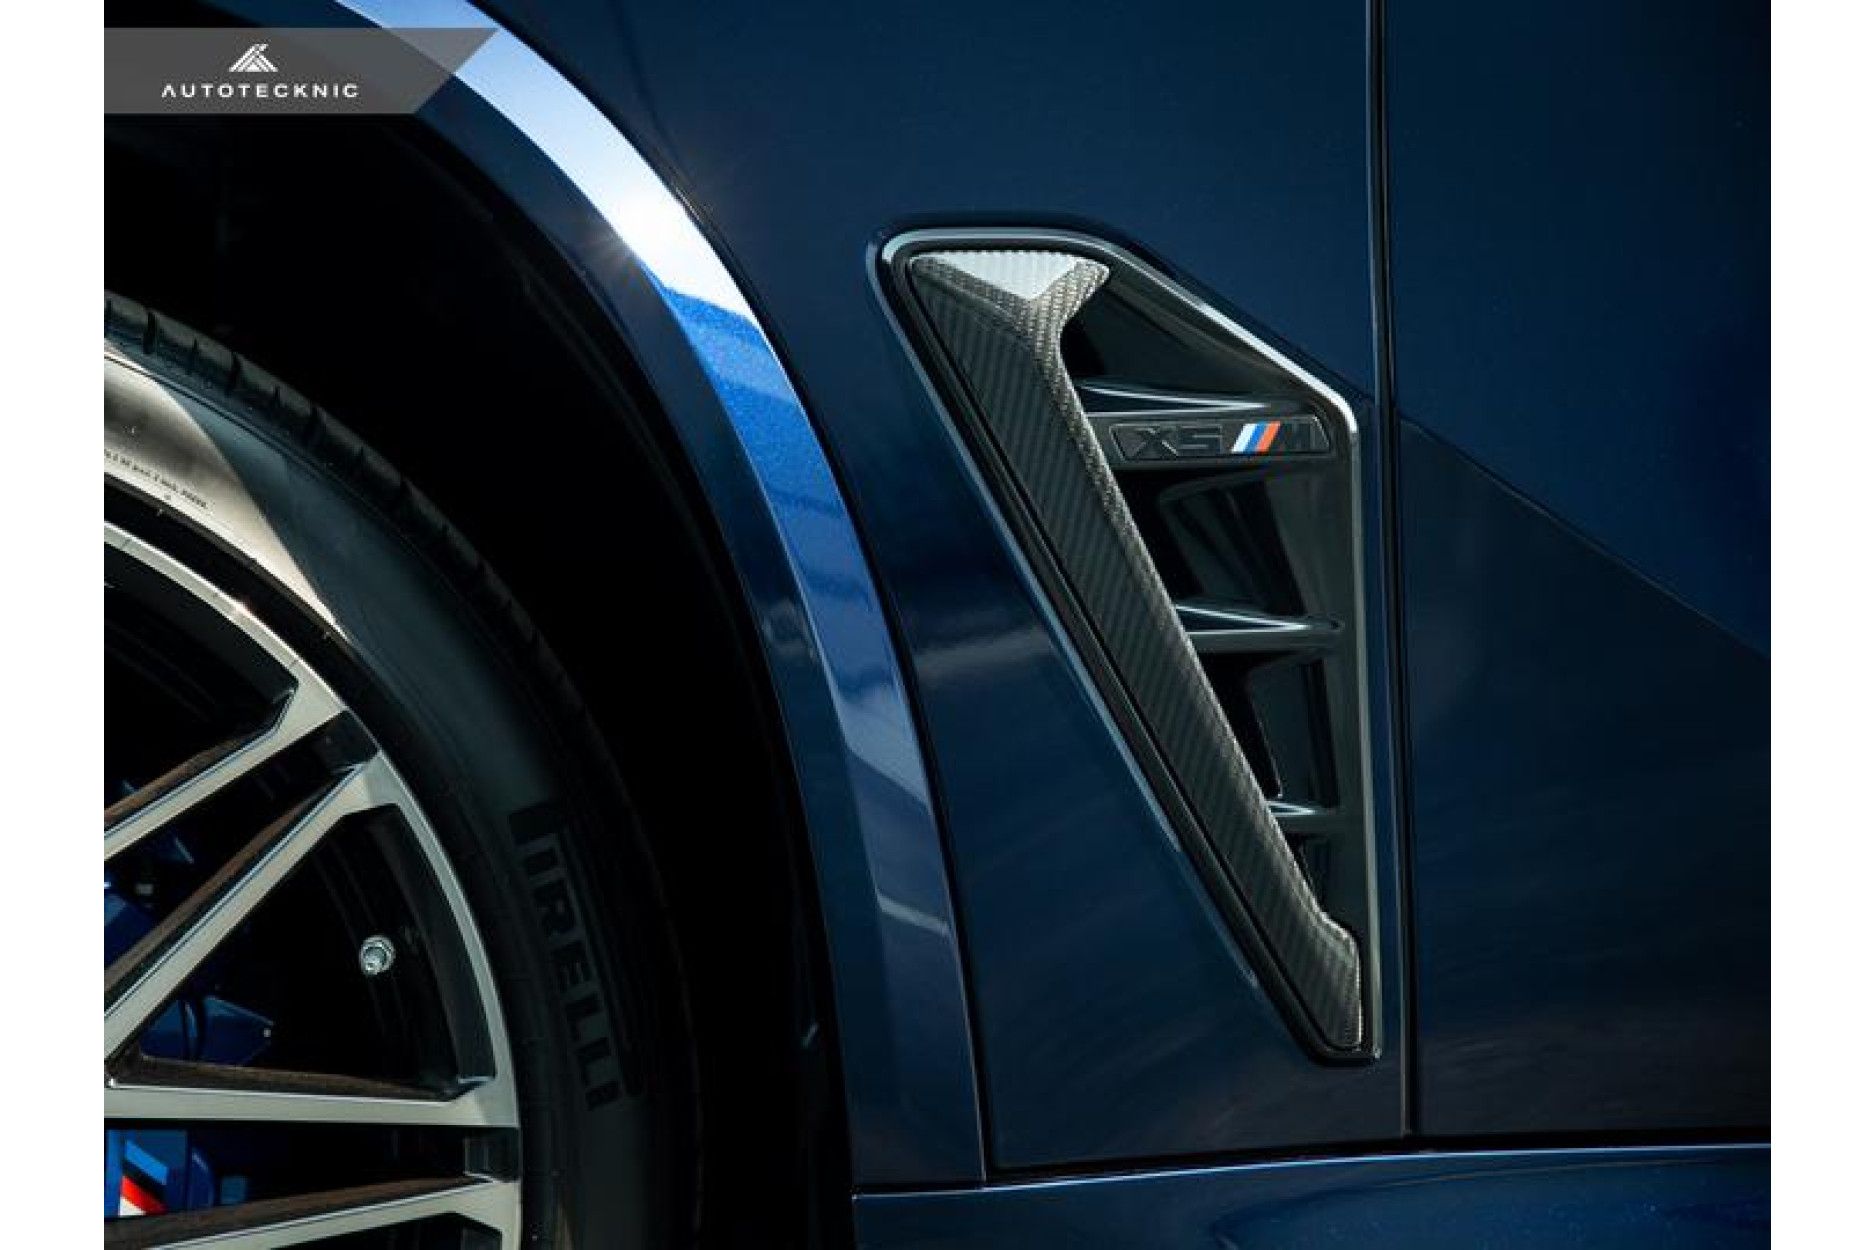 Autotecknic Carbon Kotflügel Lufteinlässe für BMW F95 X5M - online